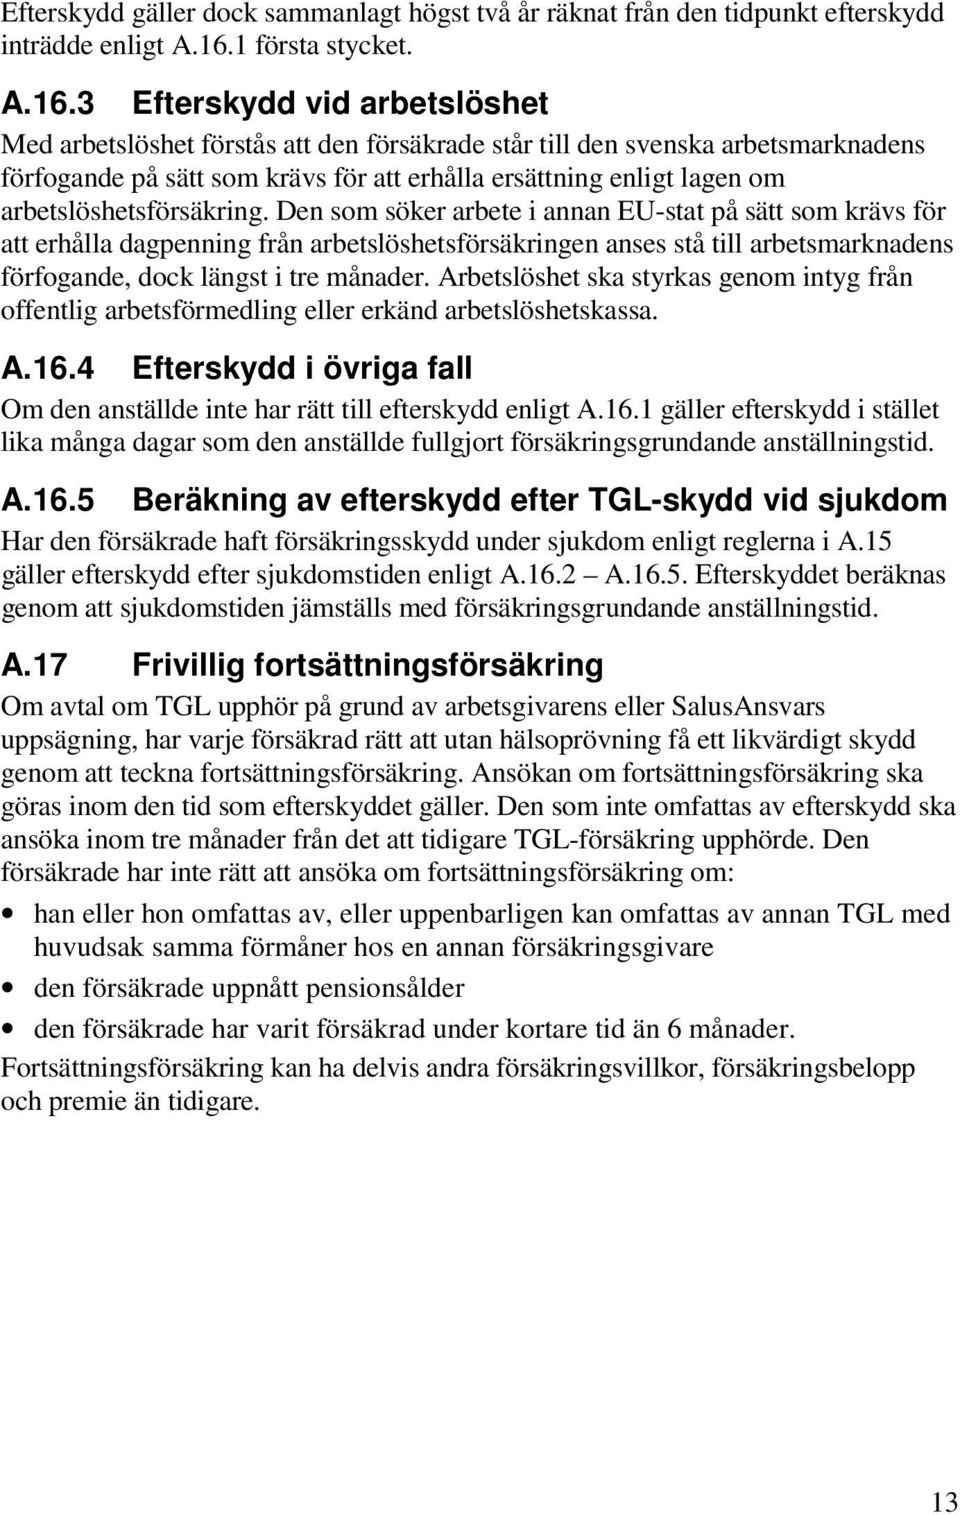 3 Efterskydd vid arbetslöshet Med arbetslöshet förstås att den försäkrade står till den svenska arbetsmarknadens förfogande på sätt som krävs för att erhålla ersättning enligt lagen om